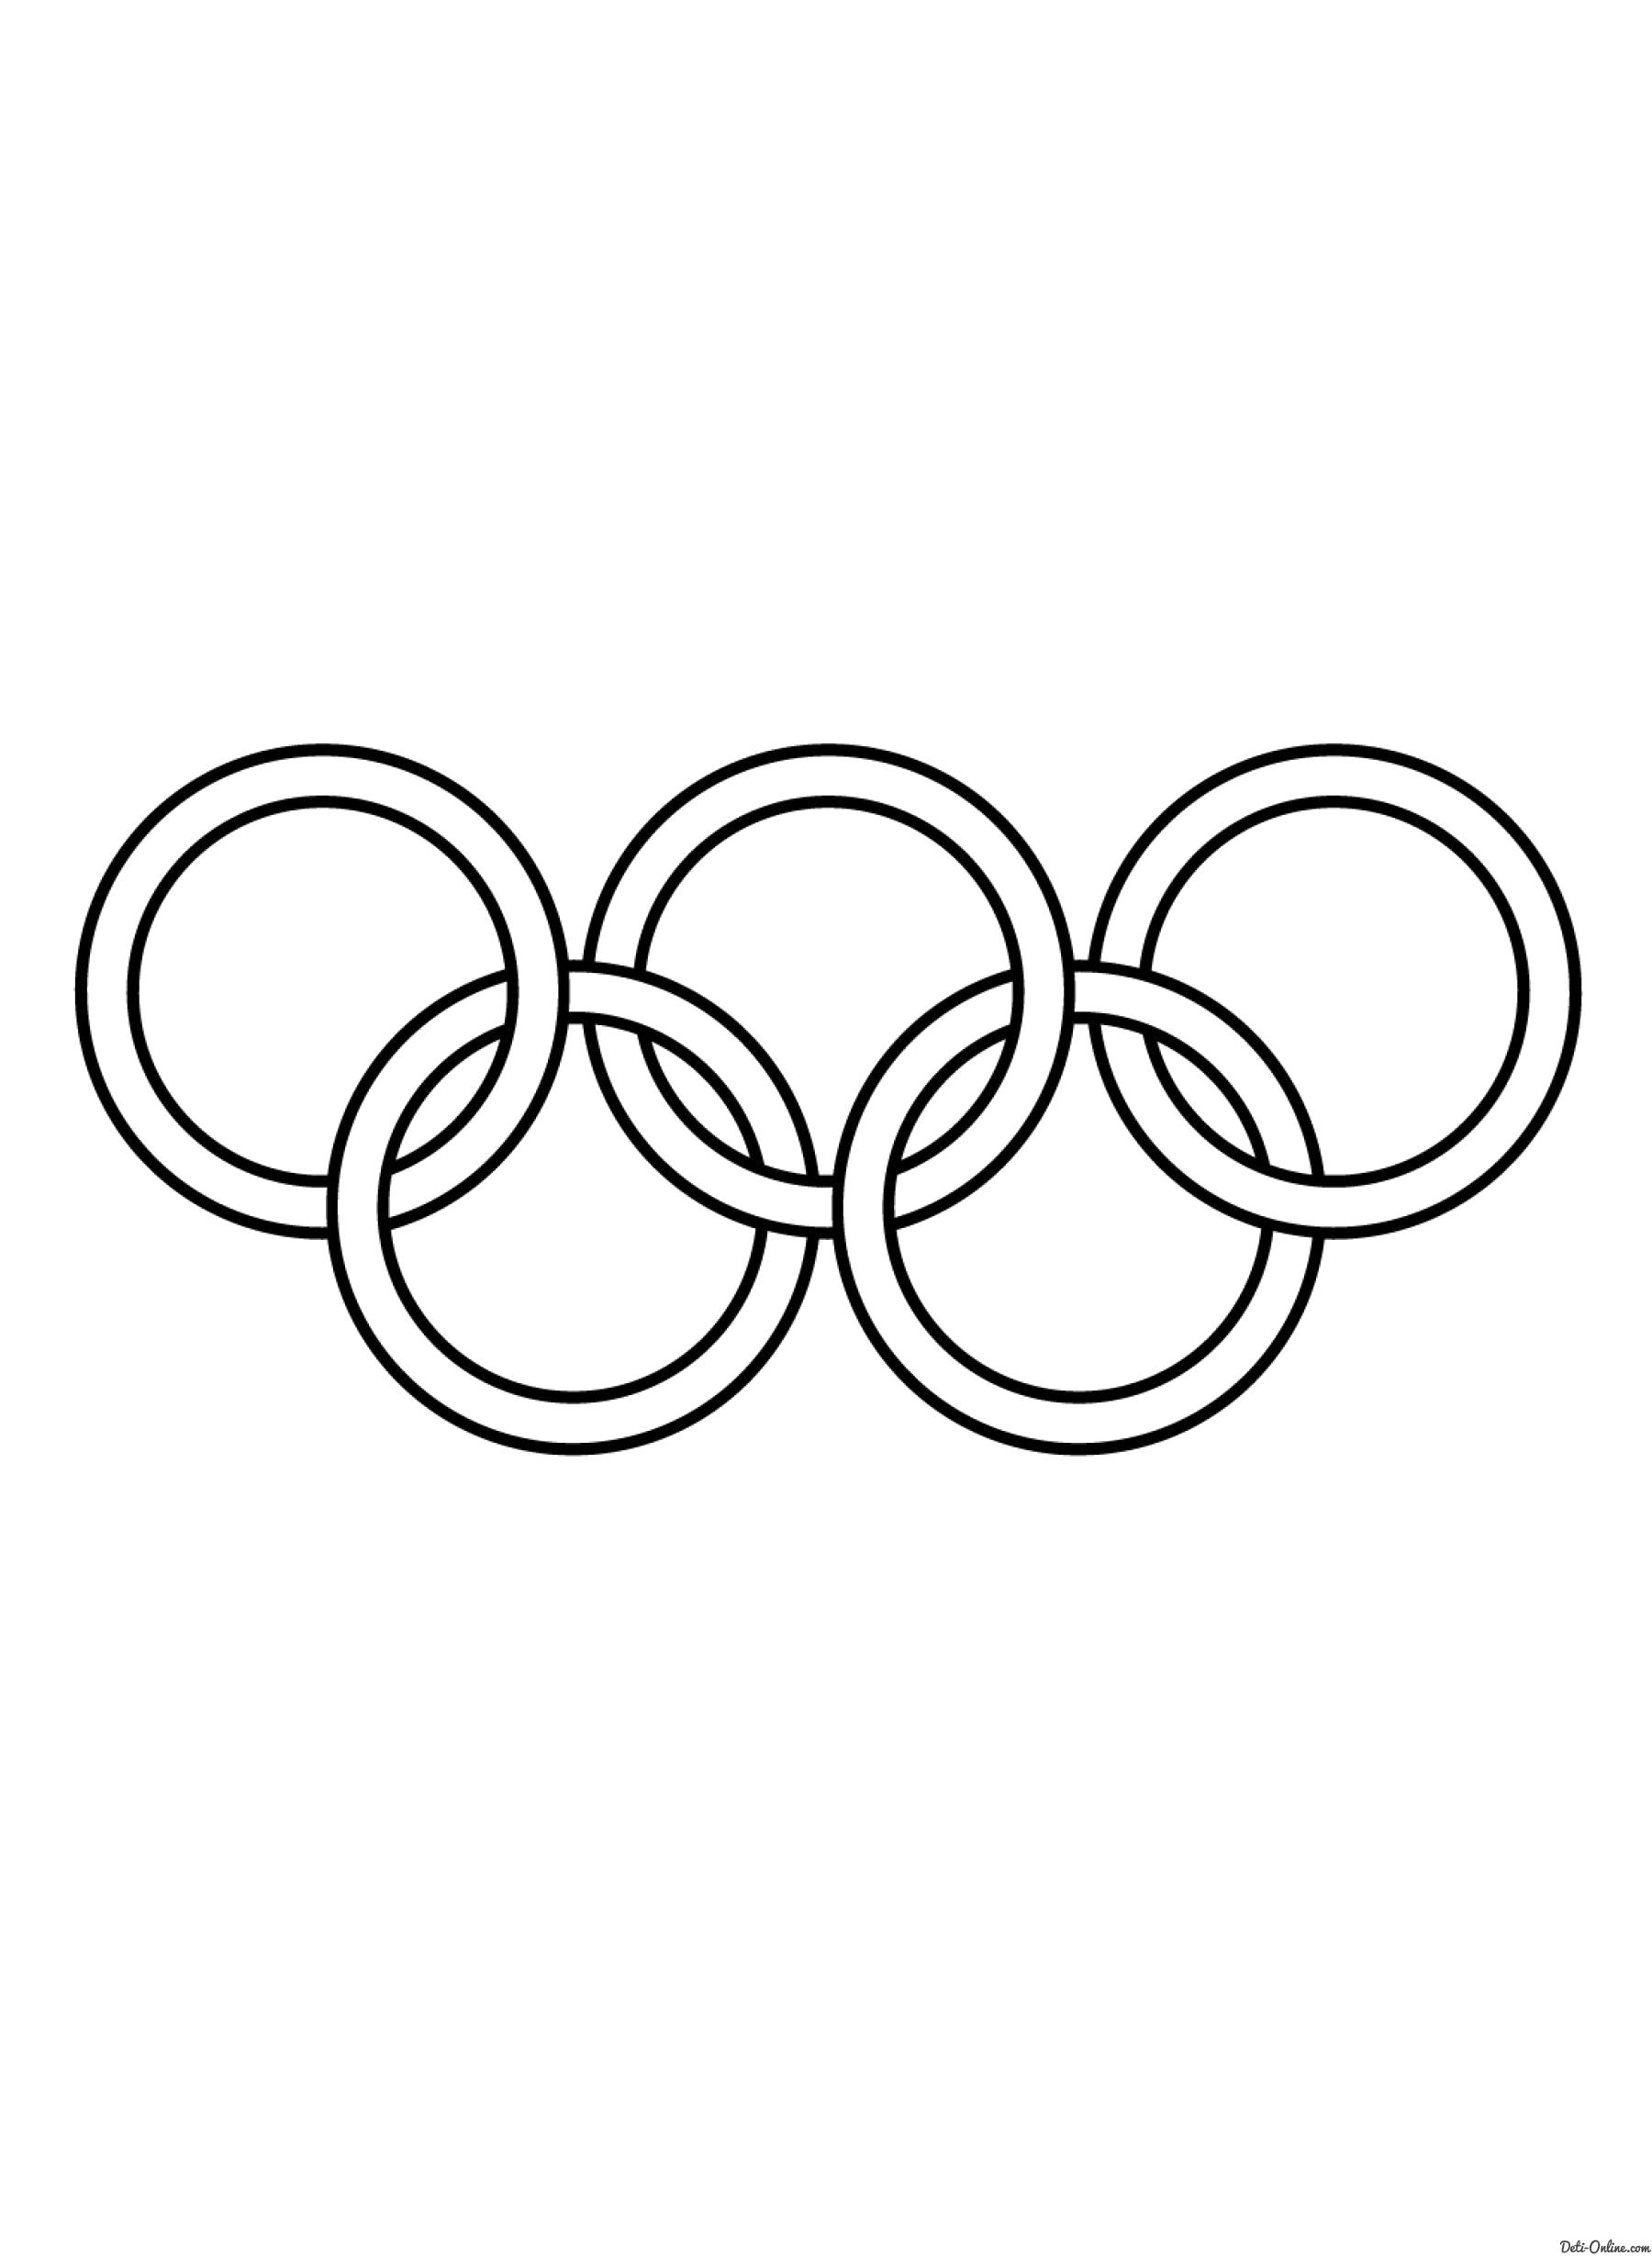 Раскраска  олимпийские кольца. Скачать Олимпиада.  Распечатать Олимпиада